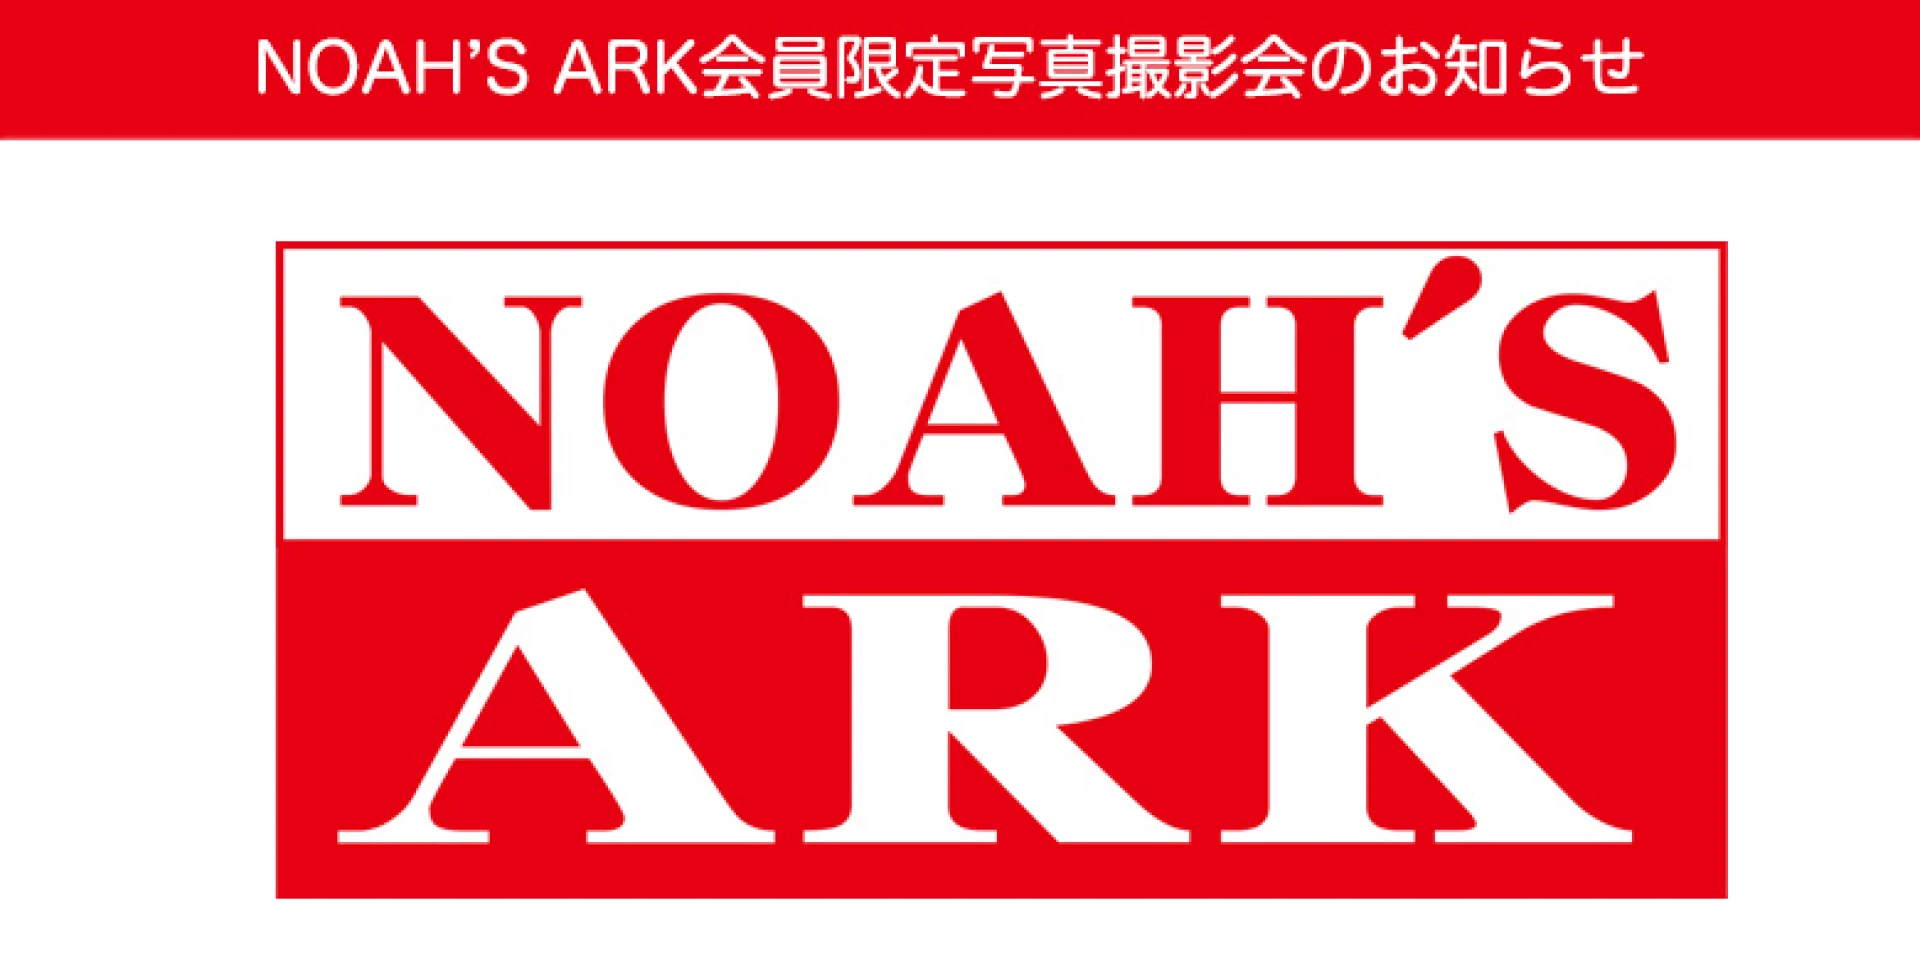 ファンクラブNOAH'S ARK 会員限定写真撮影会のお知らせ